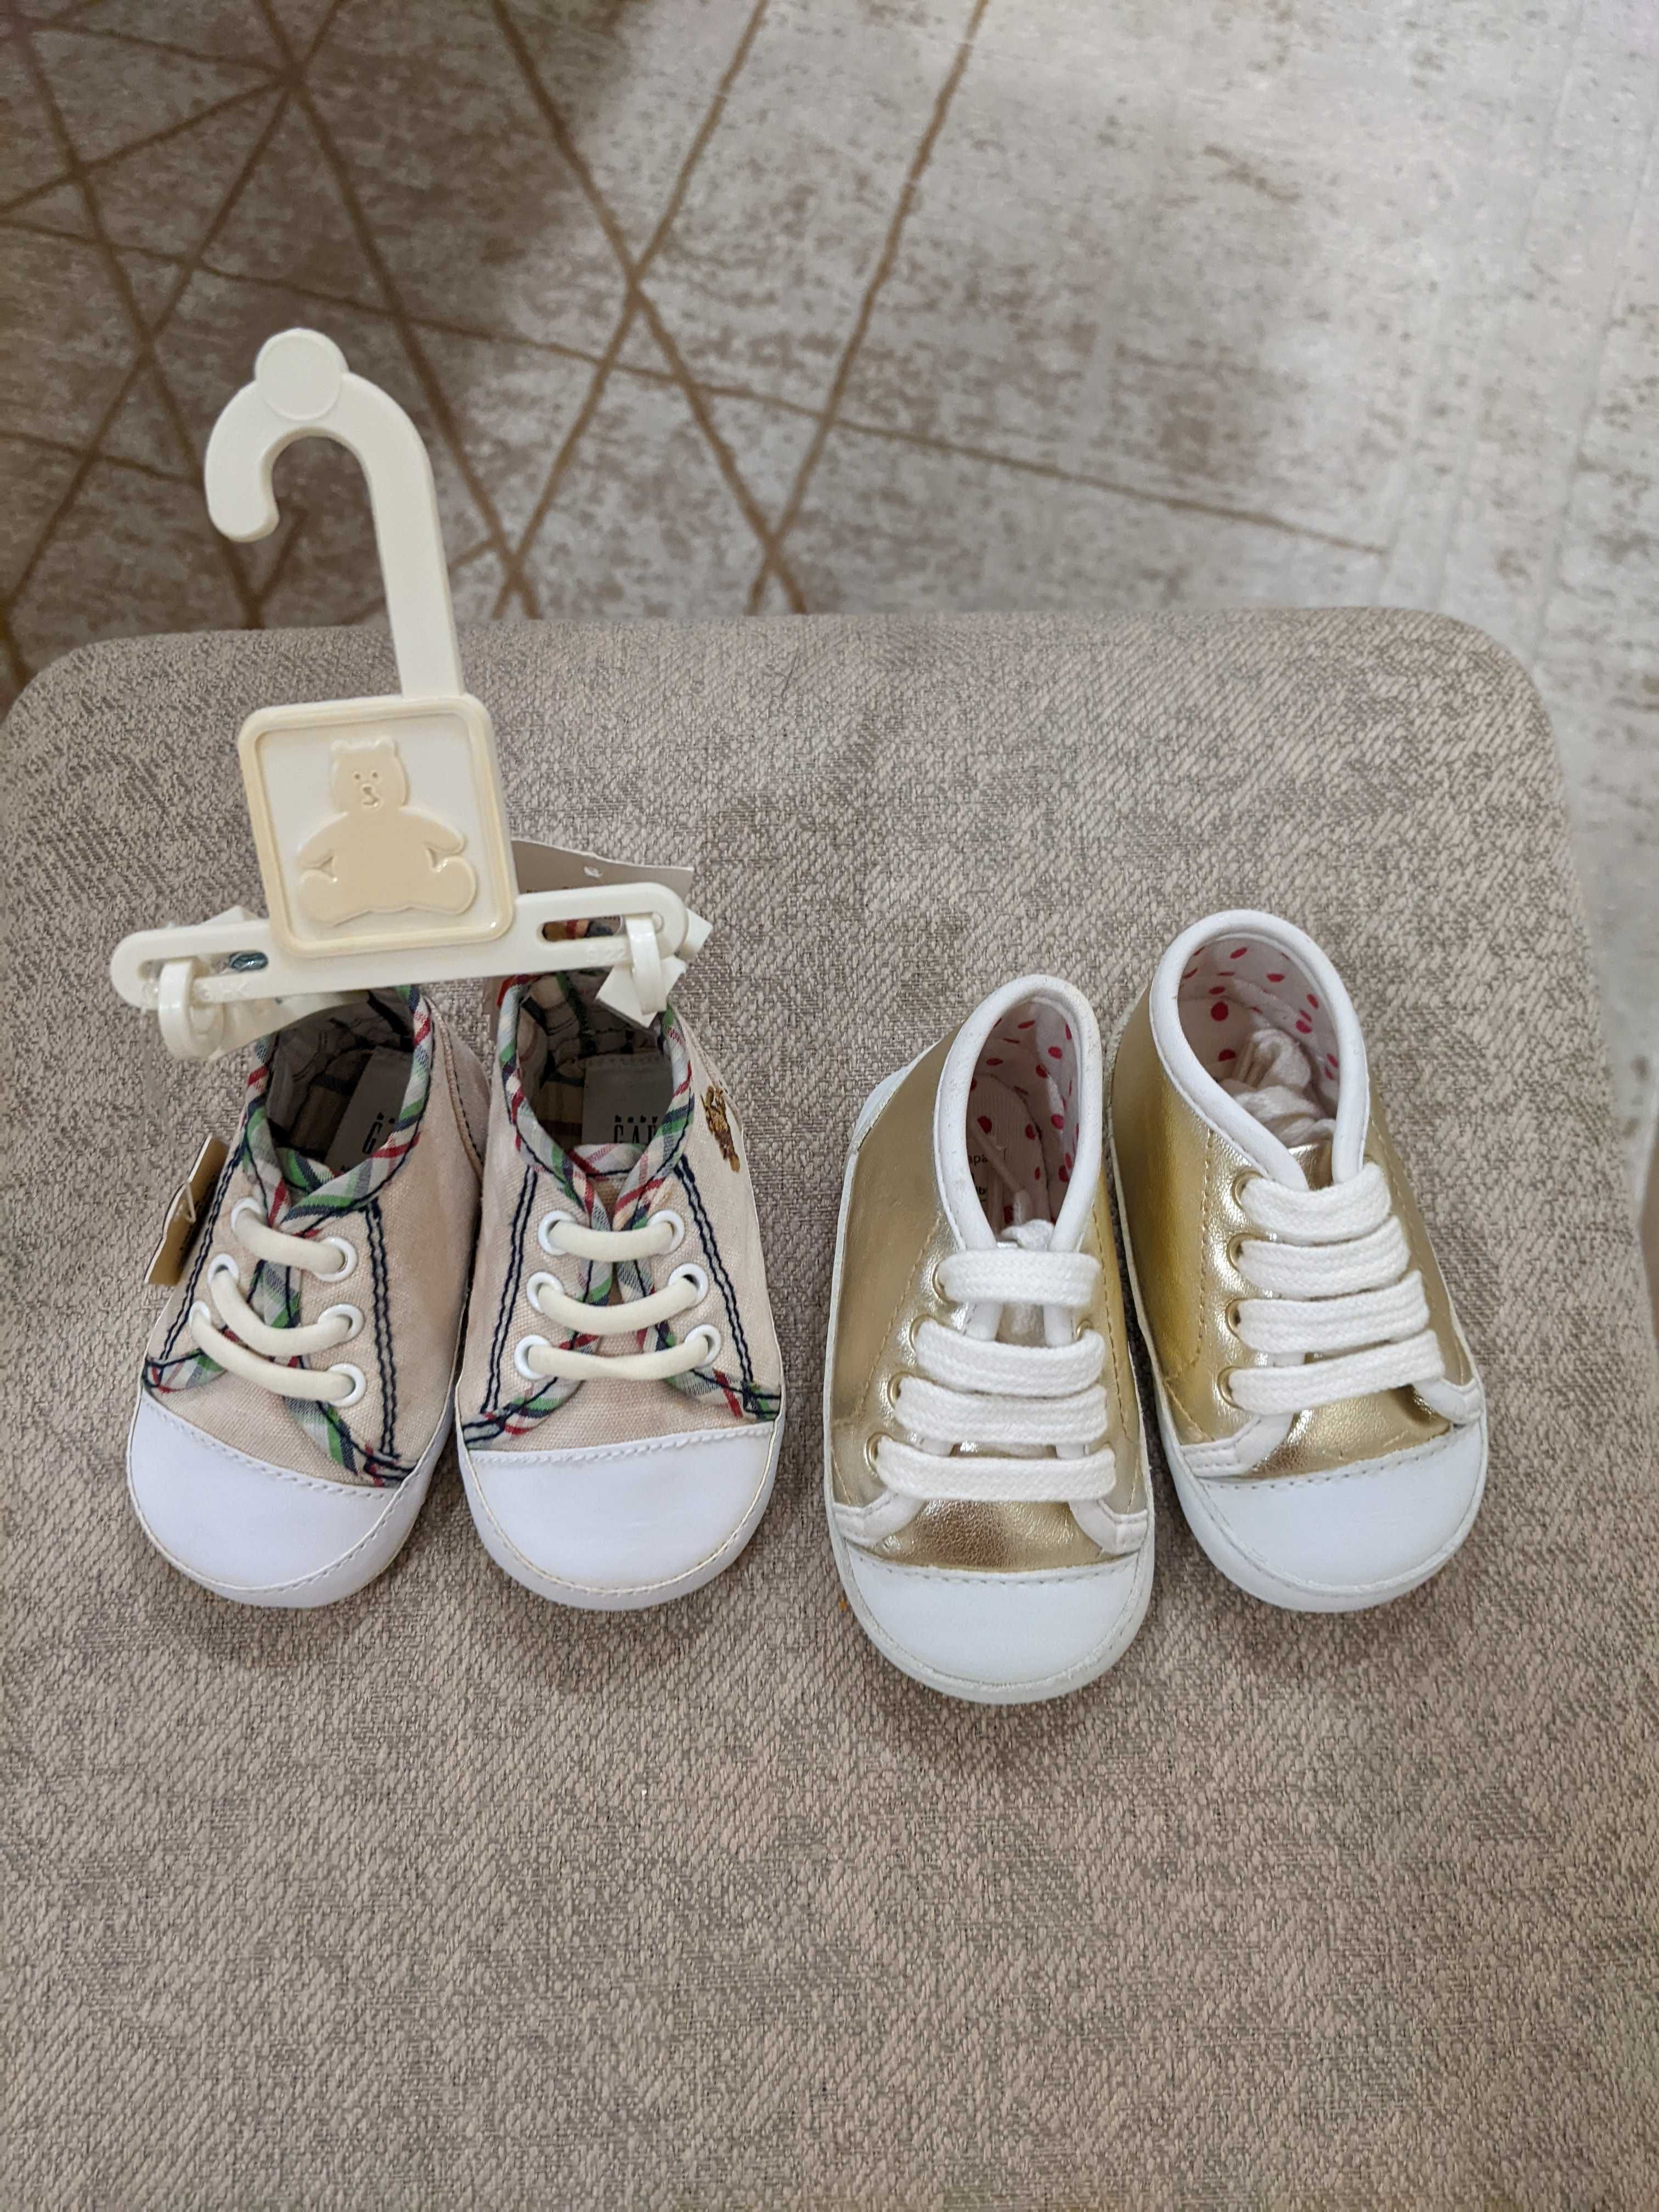 Обувь для малышей от Mamas & Papas / GAP